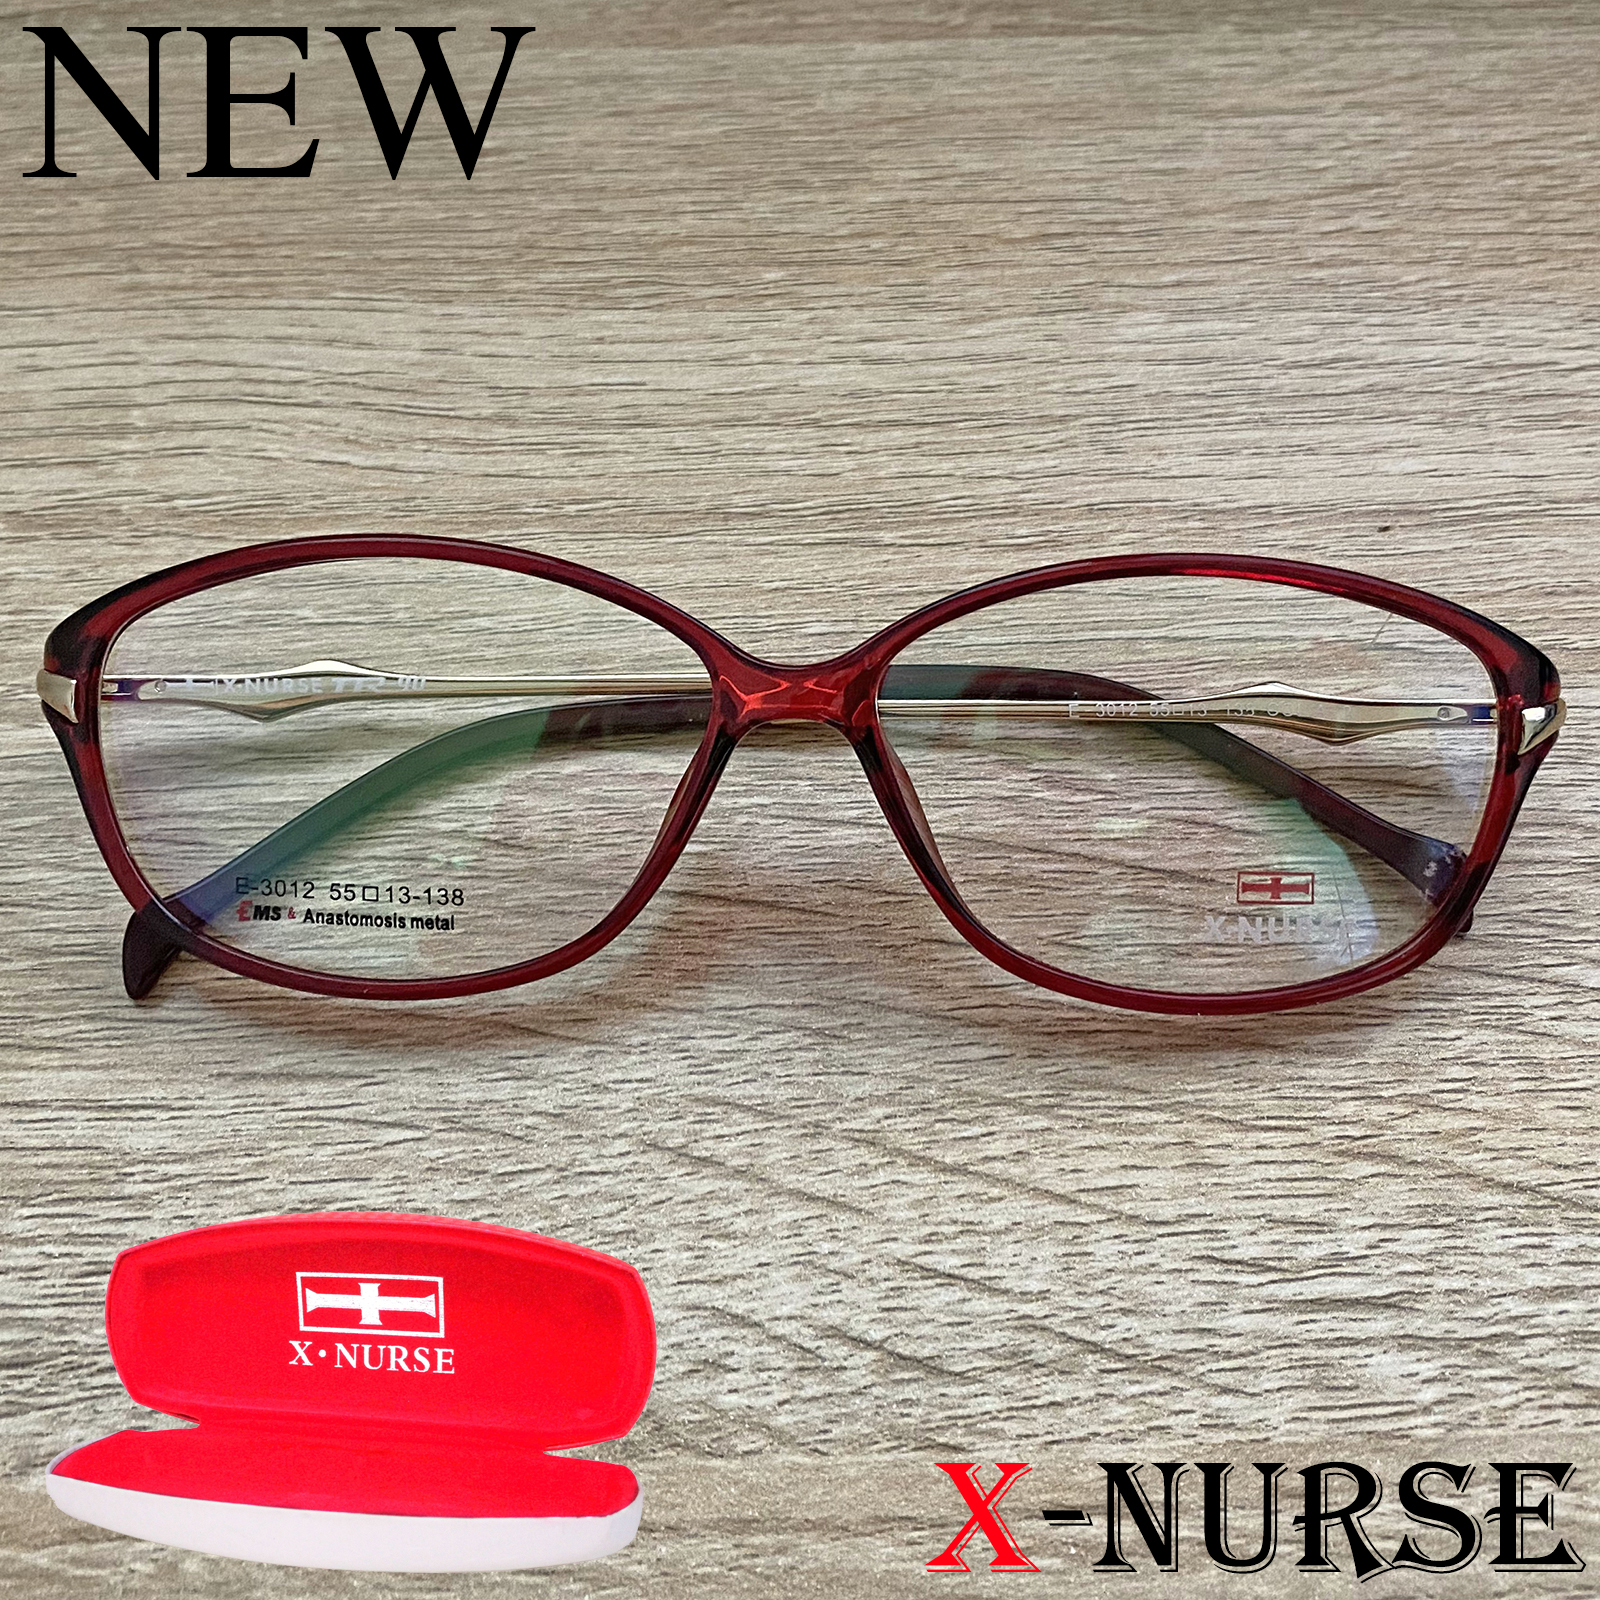 กรอบแว่นตา แว่นตาสำหรับตัดเลนส์ ผู้ชาย ผู้หญิง Fashion รุ่น X-NURSE 3012 สีแดง ทรงรี ขาสปริง วัสดุ พลาสติก พีซี เกรด เอ รับตัดเลนส์สายตาเลนส์กันแดดทุกชนิด